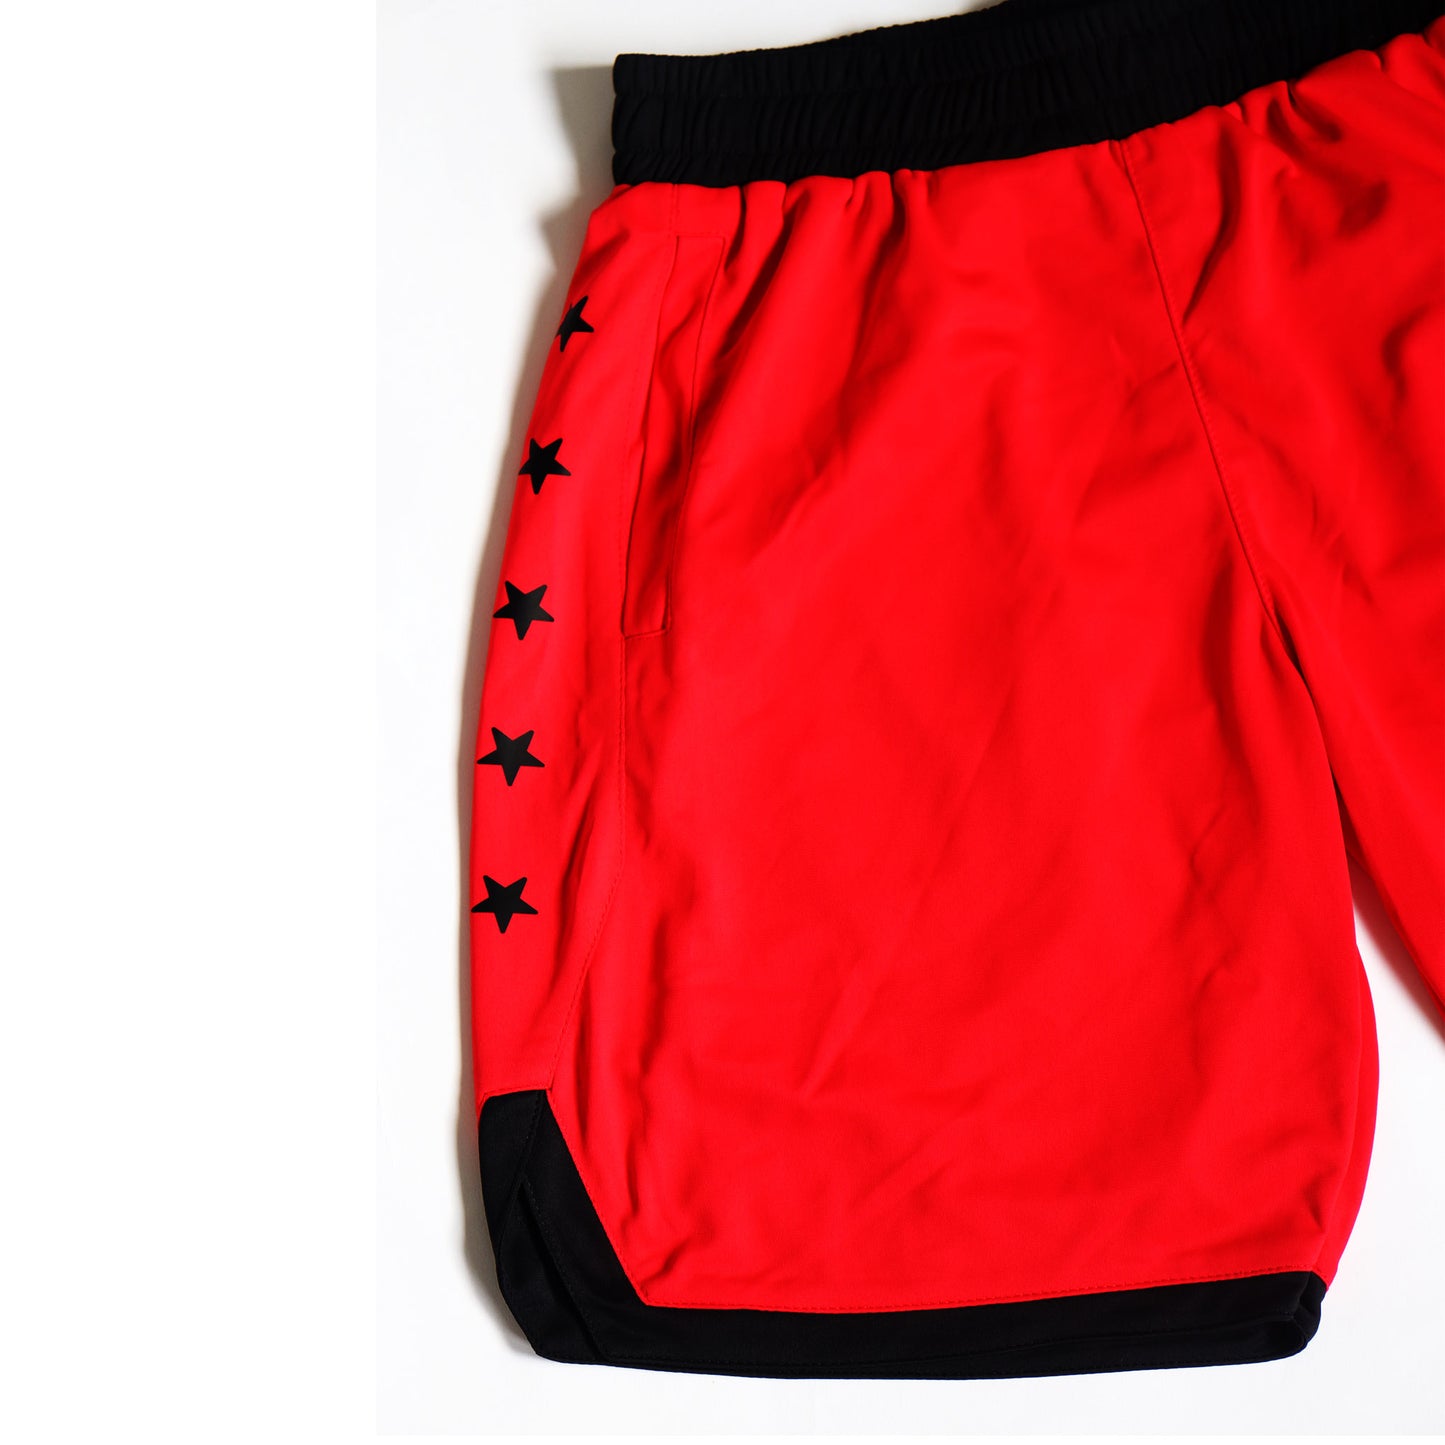 Allstar Training Shorts - Red